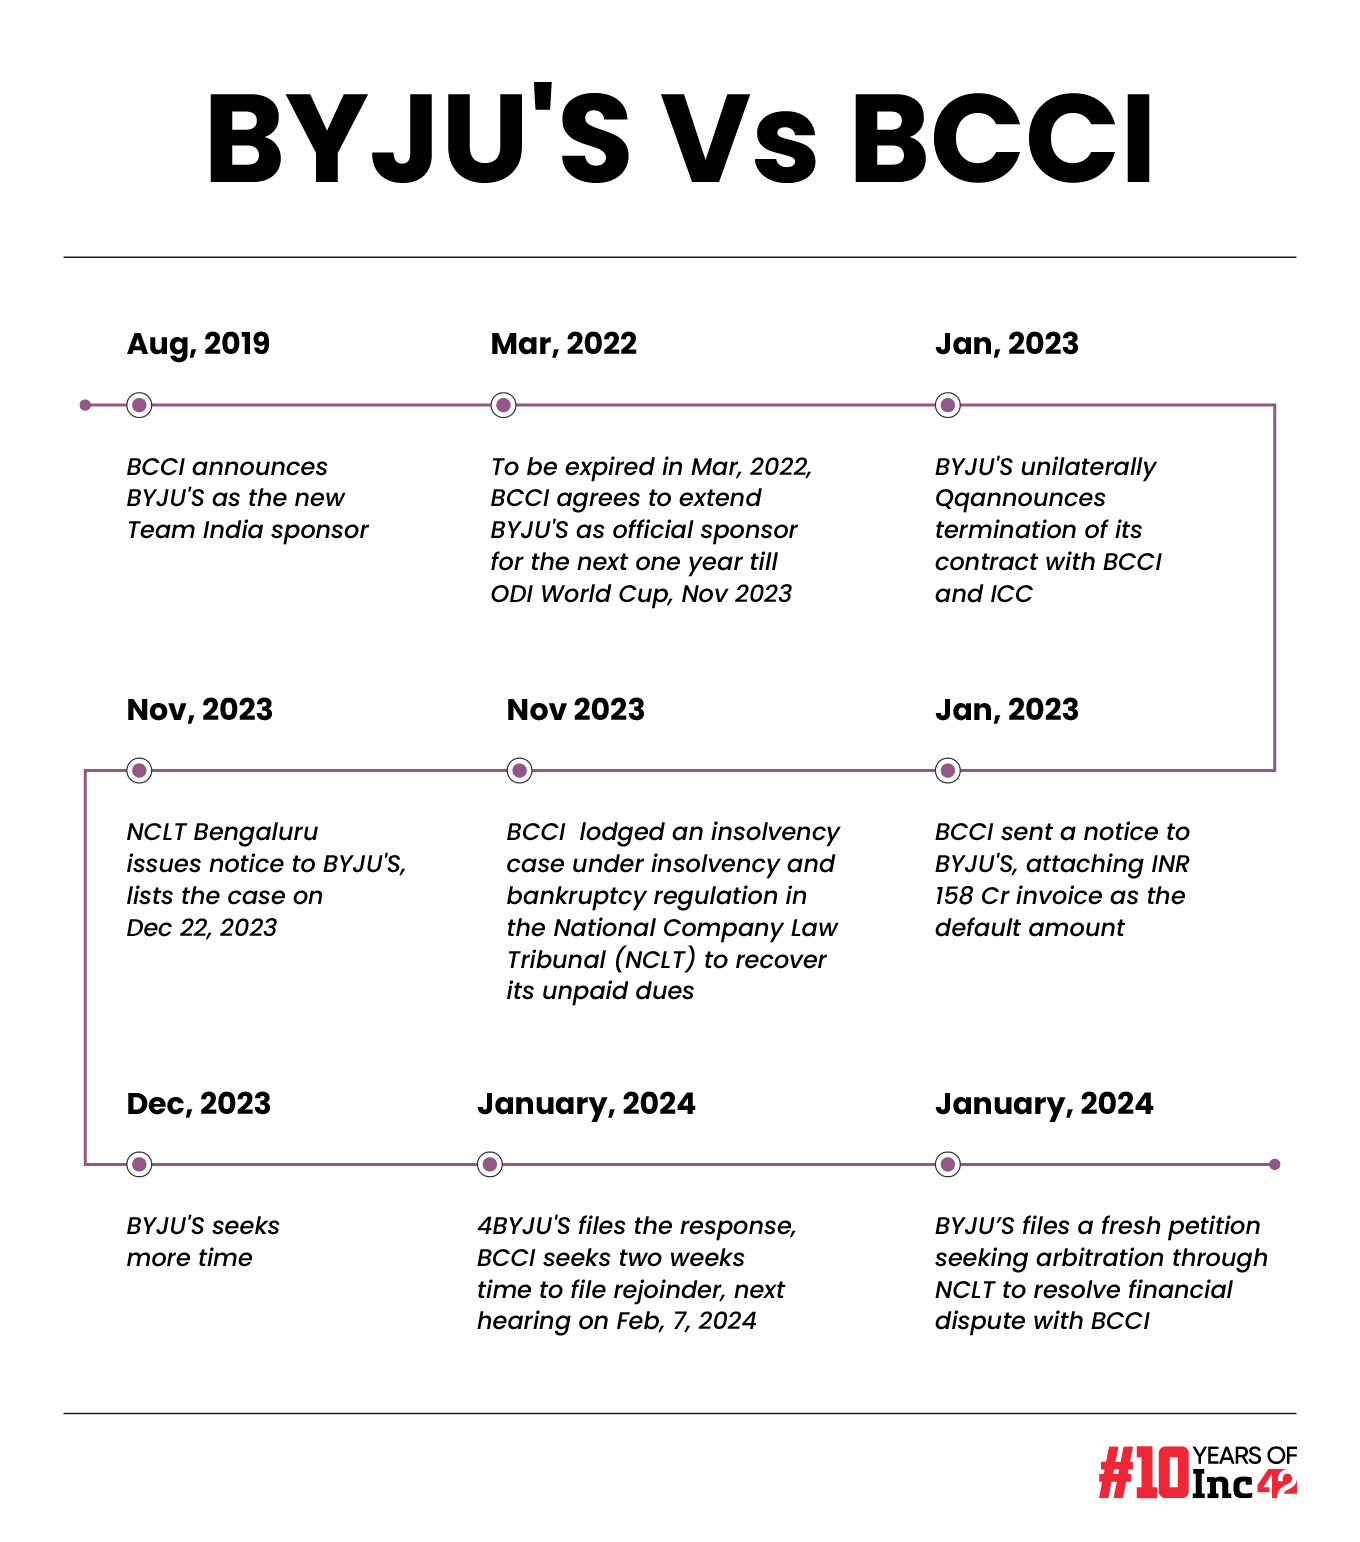 BYJU'S Vs BCCI timeline